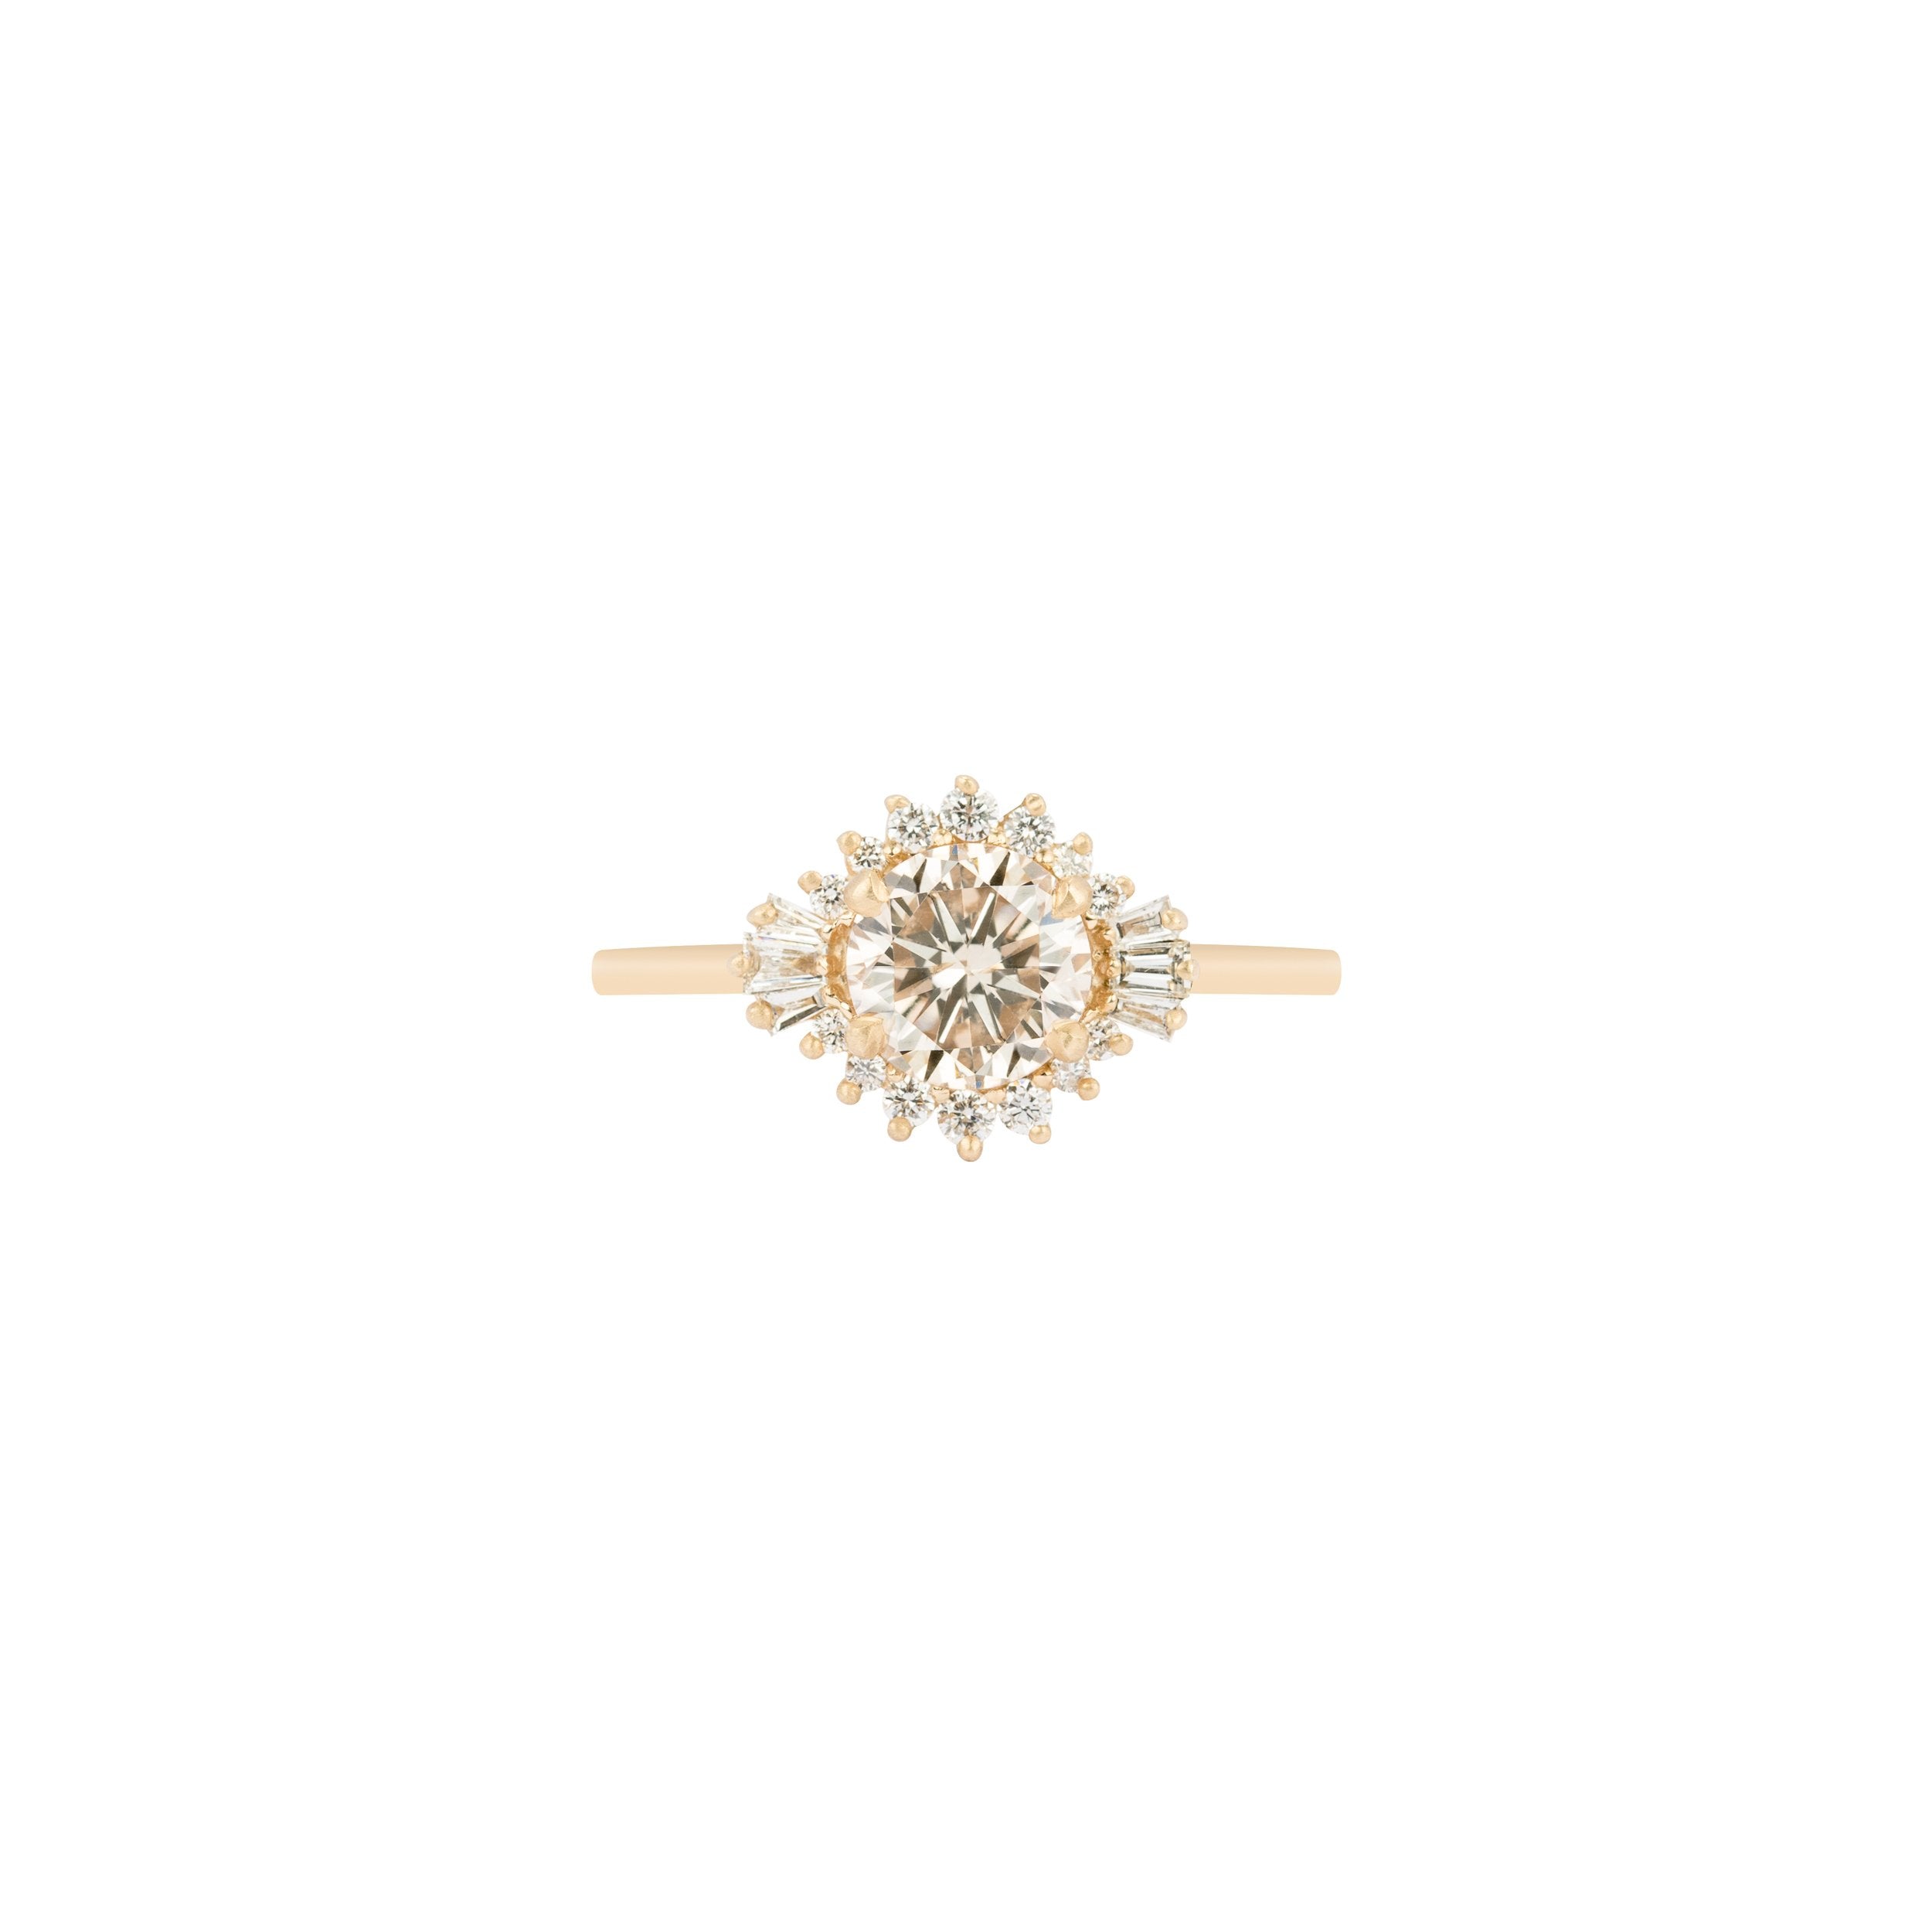 Sol Ring by Kasia Jewelry – Kasia J.